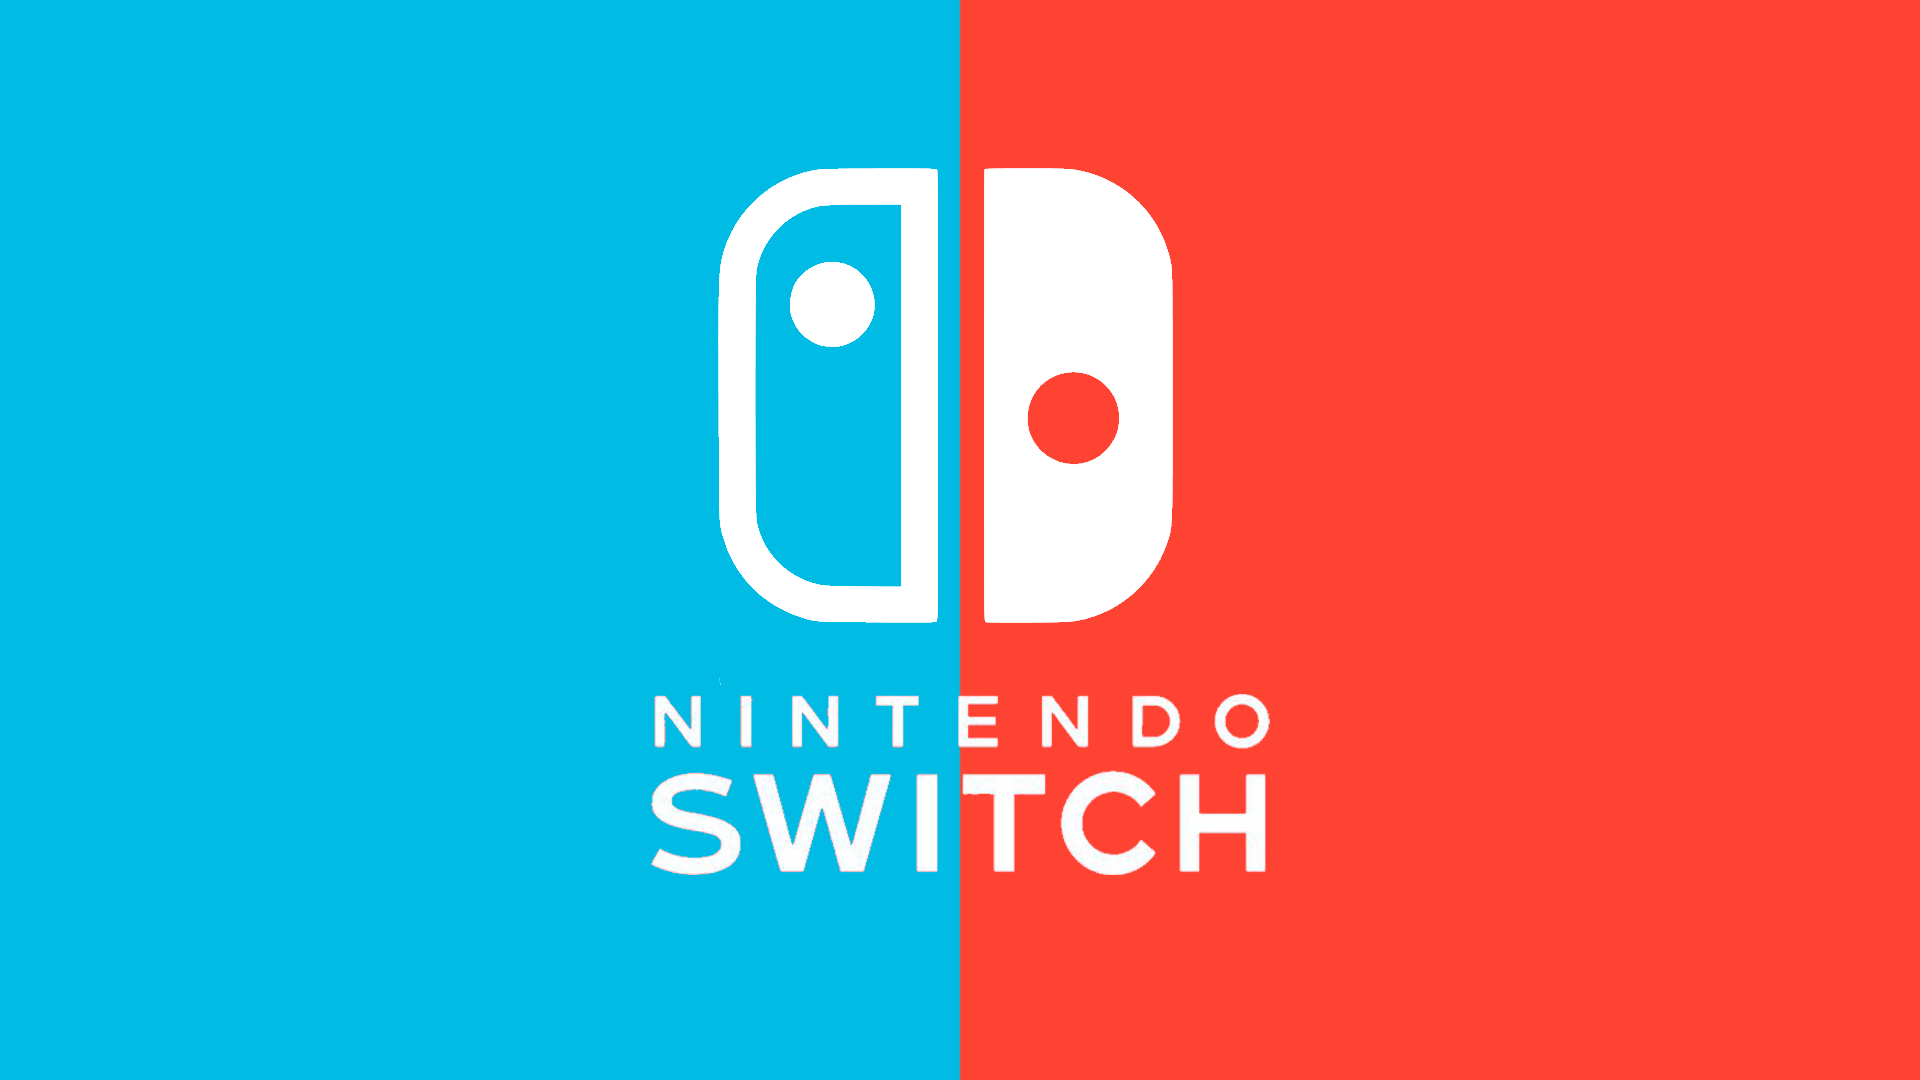 Imagei Made A Nintendo Switch Wallpaper - Nintendo Switch Wallpaper 4k , HD Wallpaper & Backgrounds